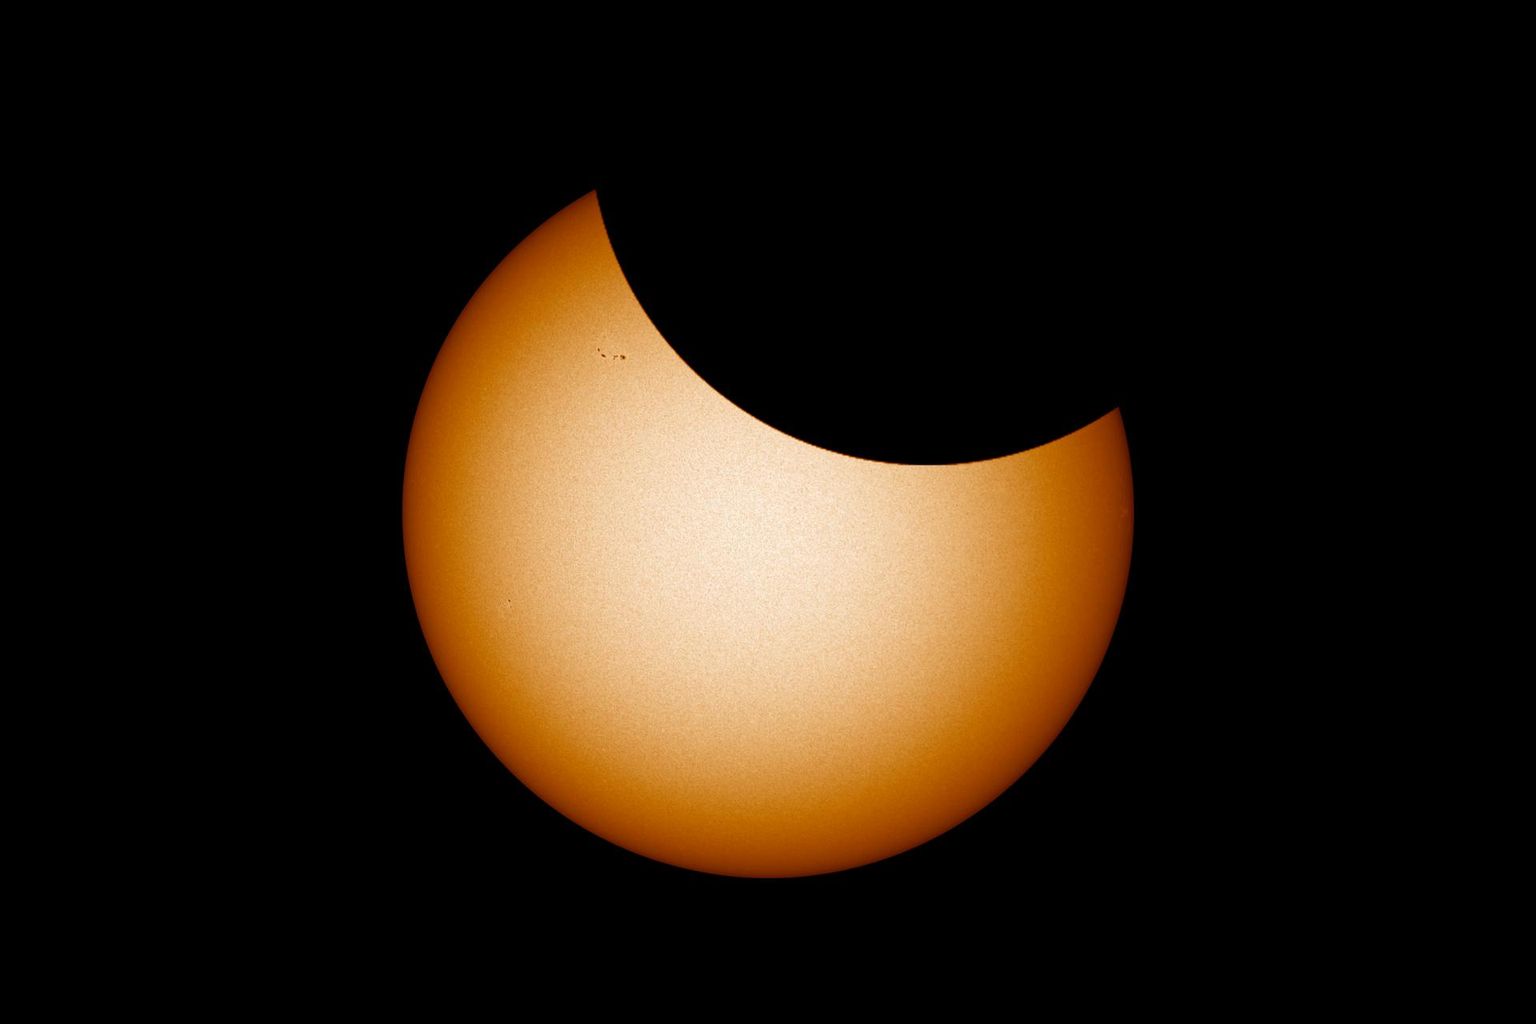 Selline võiks neljapäevane päikesevarjutus tipphetkel välja näha teleskoobis. Foto Päikesest on tehtud 30. mail 2021 ning sellel on näha ka mõned pisikesed päikeseplekid, mis on neljapäevaks liikunud Päikese paremasse serva või sootuks kadunud. Loodetavasti on selleks ajaks tekkinud mõni uus juurde.